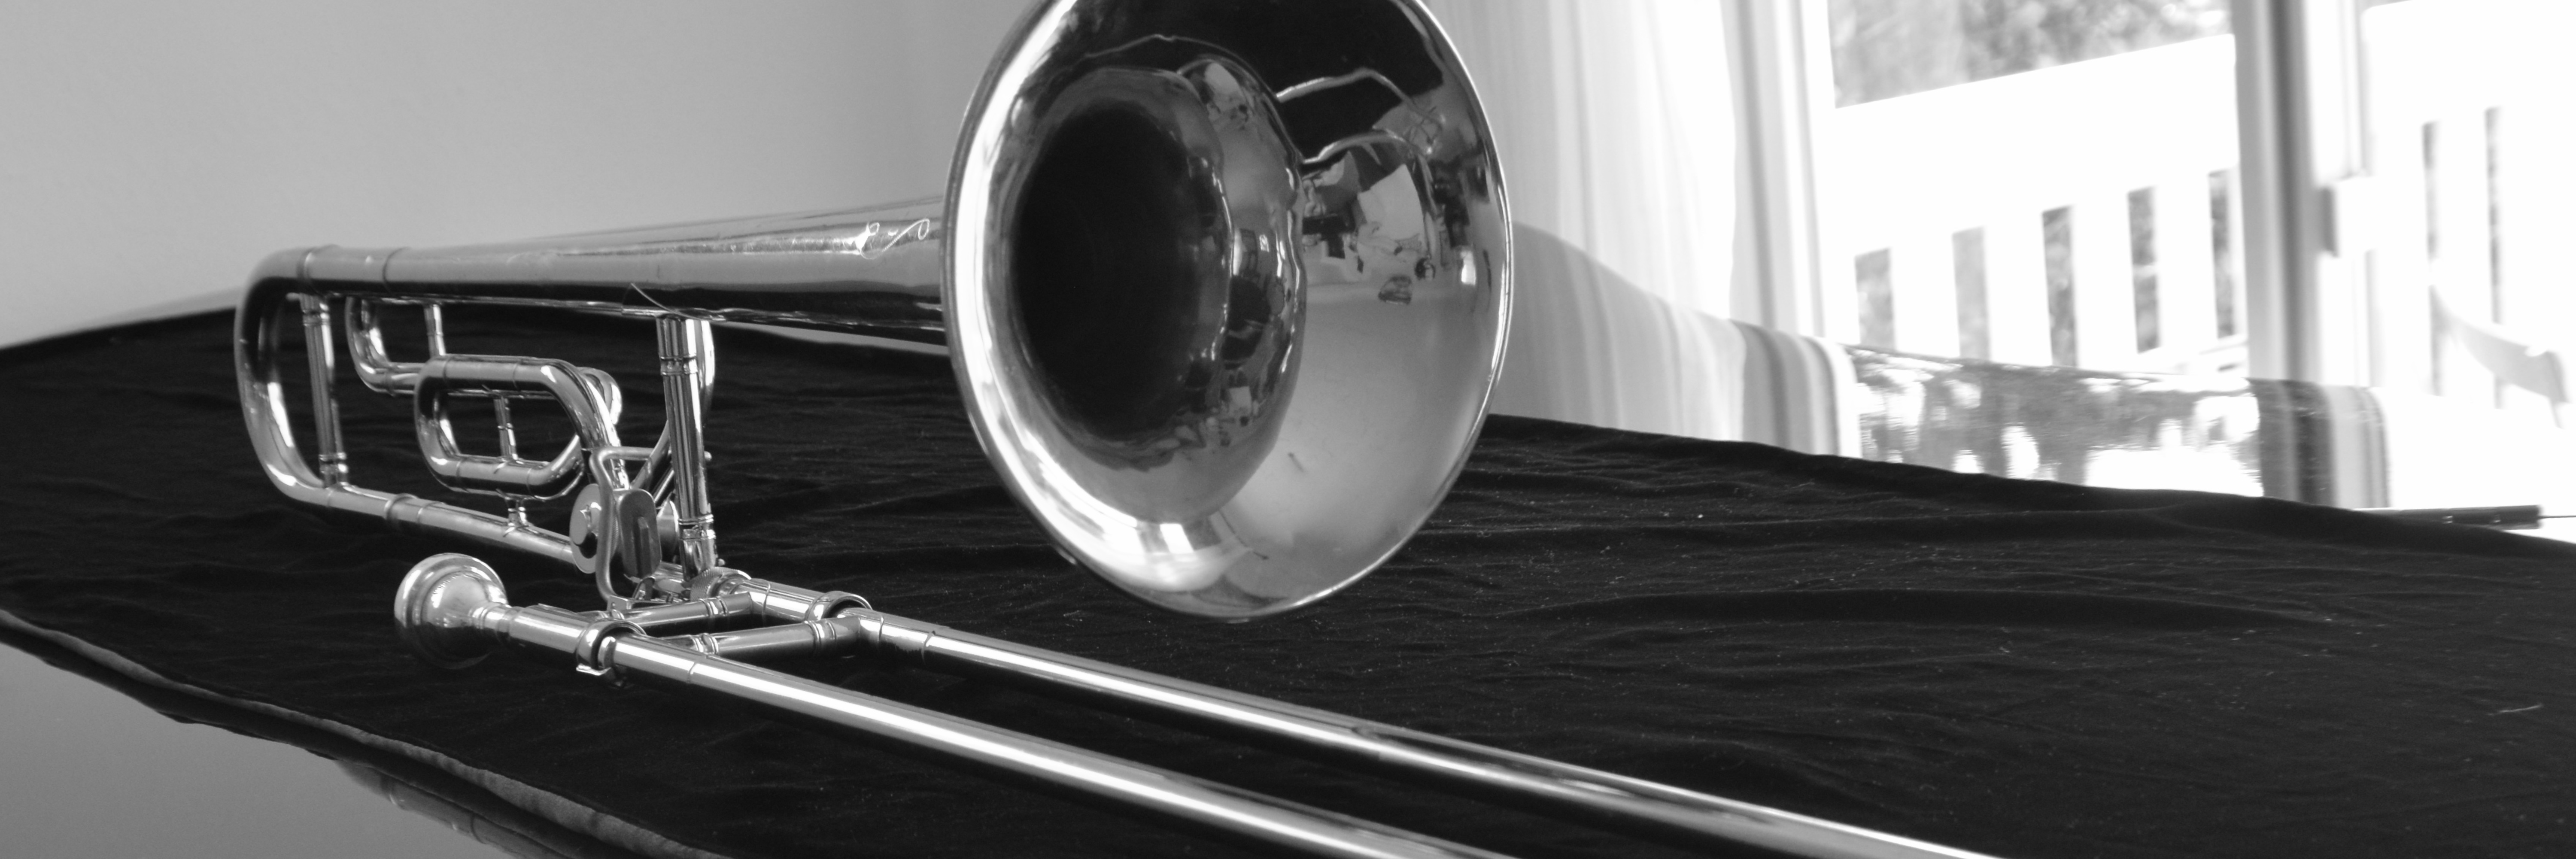 Image: Trombone on baby grand piano